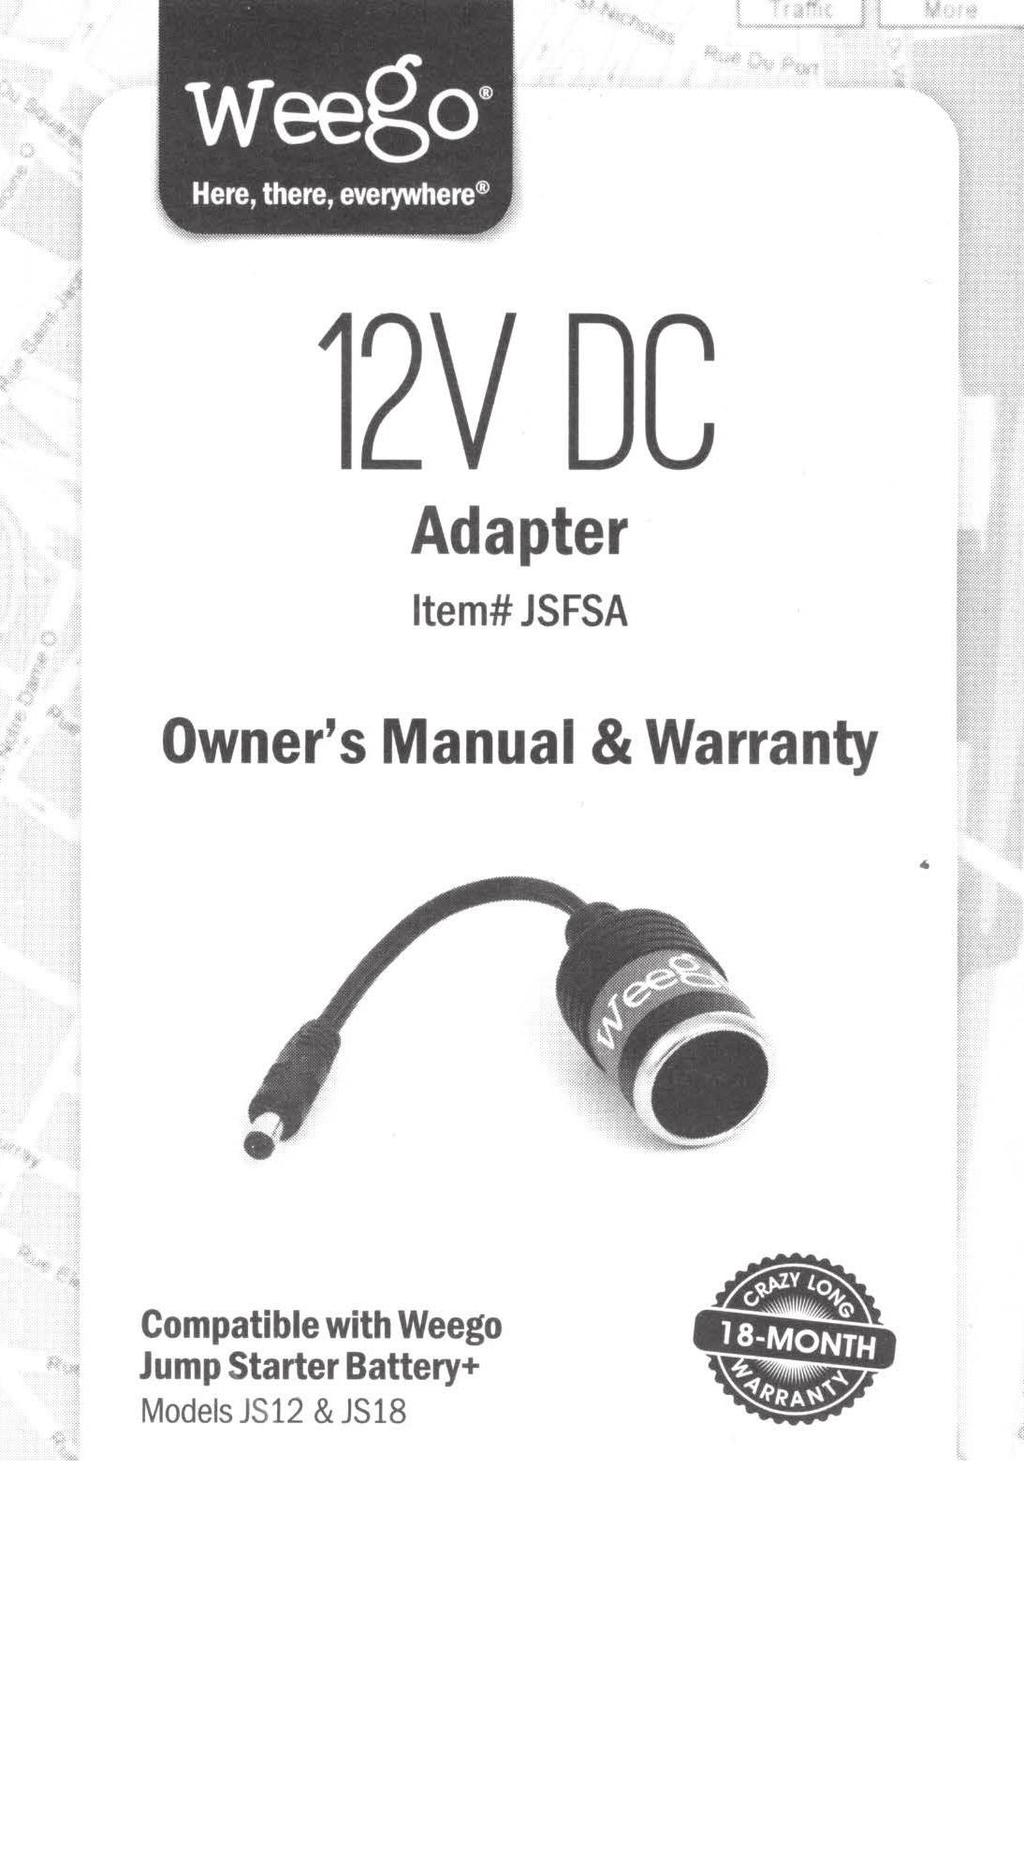 Adapter Item# JSFSA Owner's Manual & Warranty